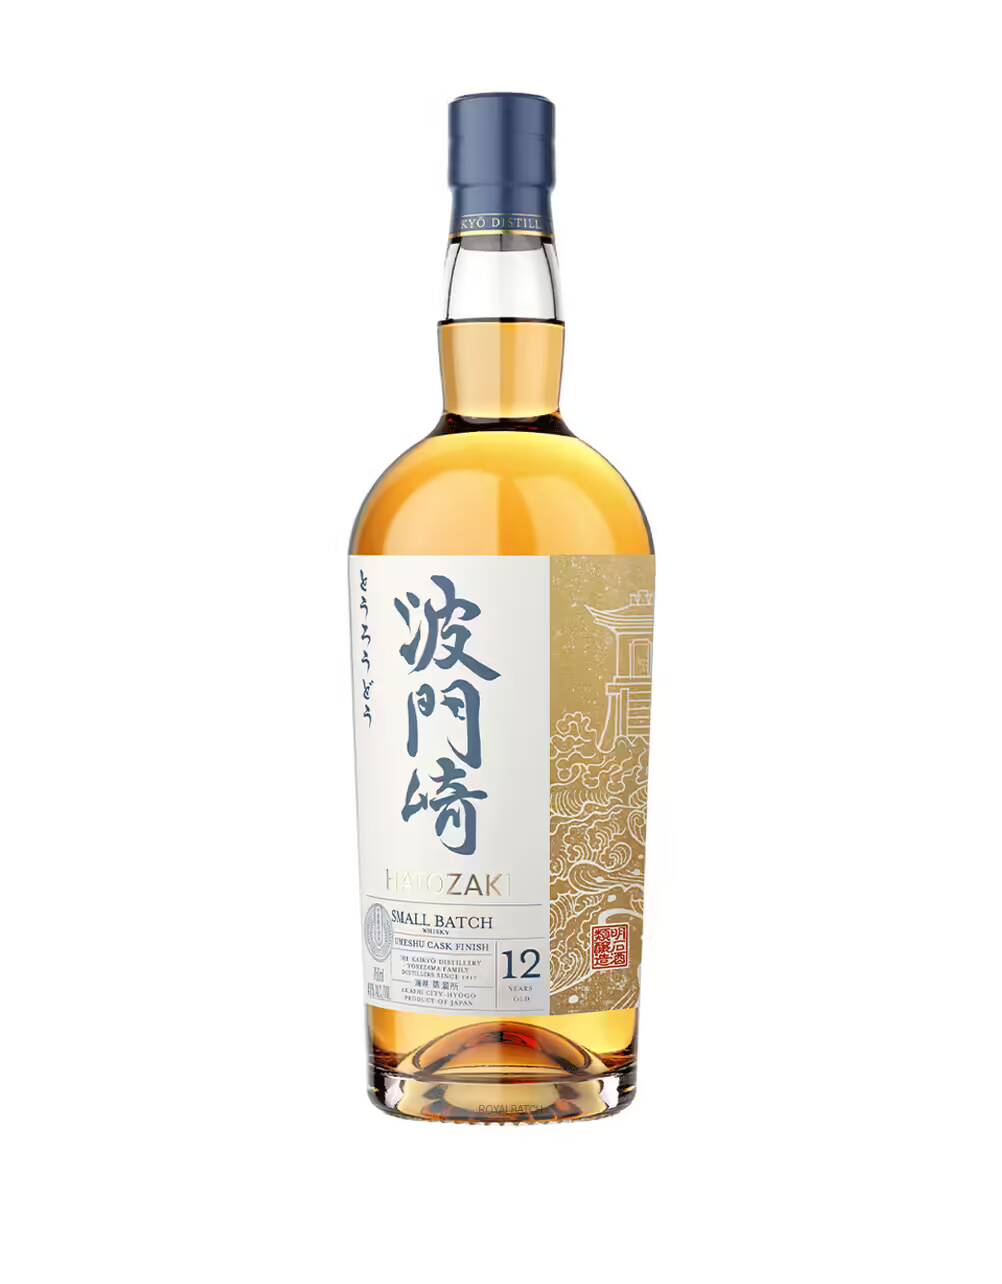 Hatozaki Small Batch Umeshu Cask Finish 12 Year Old Japanese Whisky